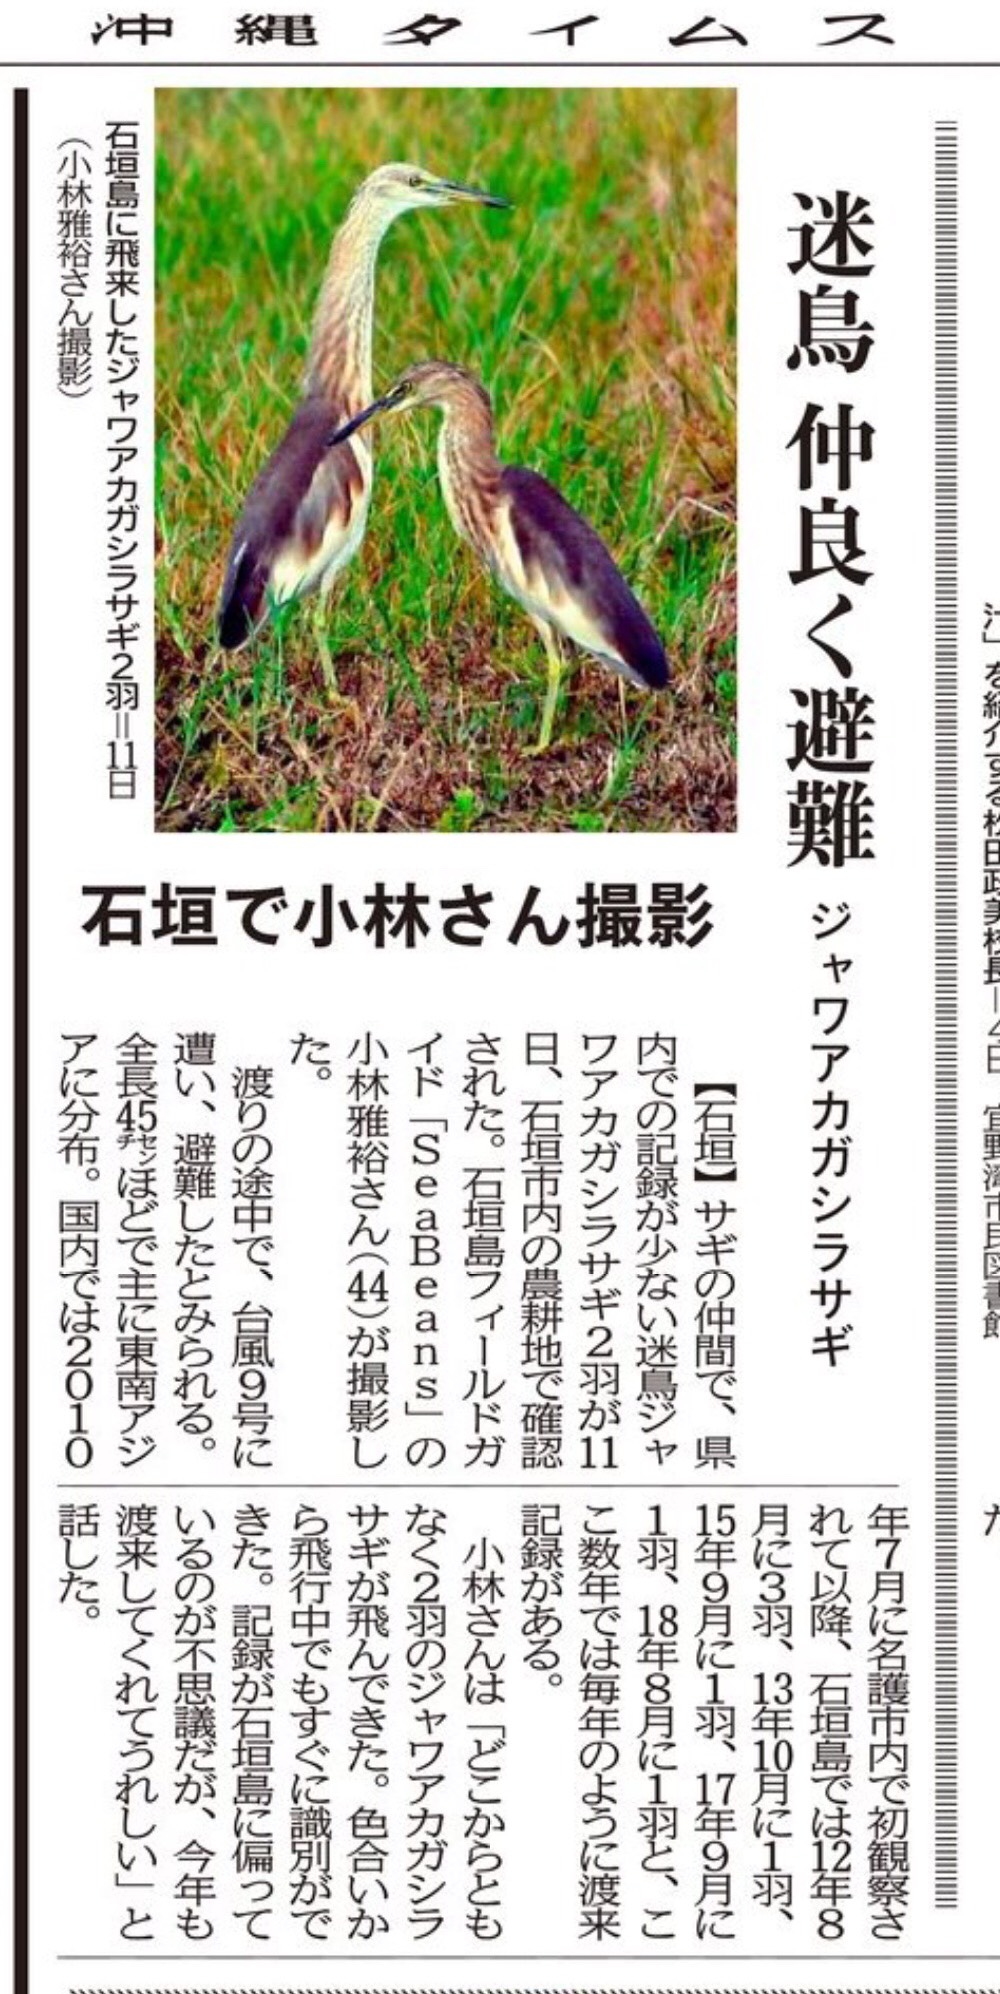 沖縄タイムス　「迷鳥 仲良く避難 ジャワアカガシラサギ」